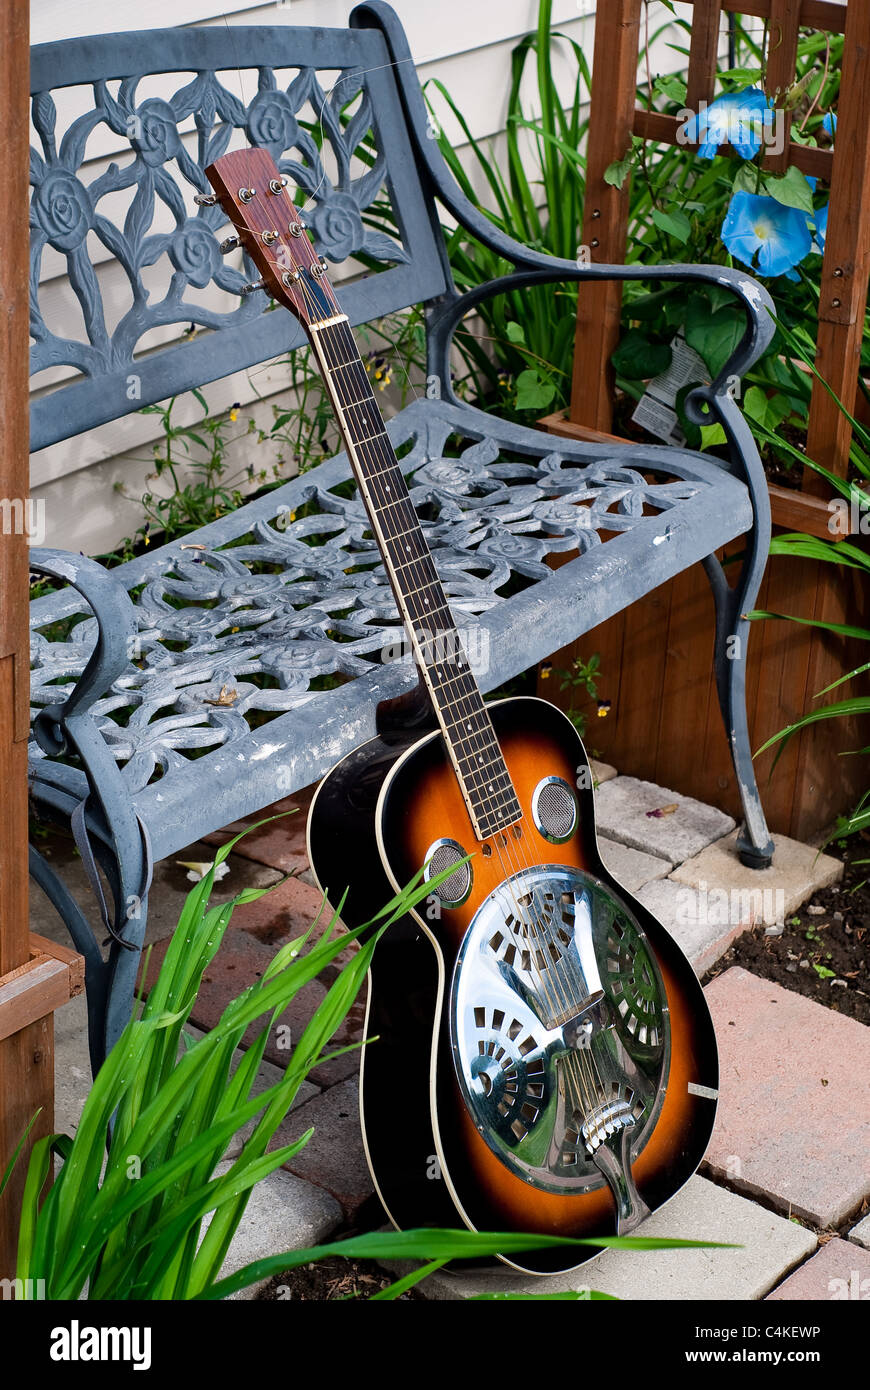 Un Dobro guitarra acústica con estilo sunburst finish se inclina contra un banco de trabajo de metal en un jardín. Foto de stock